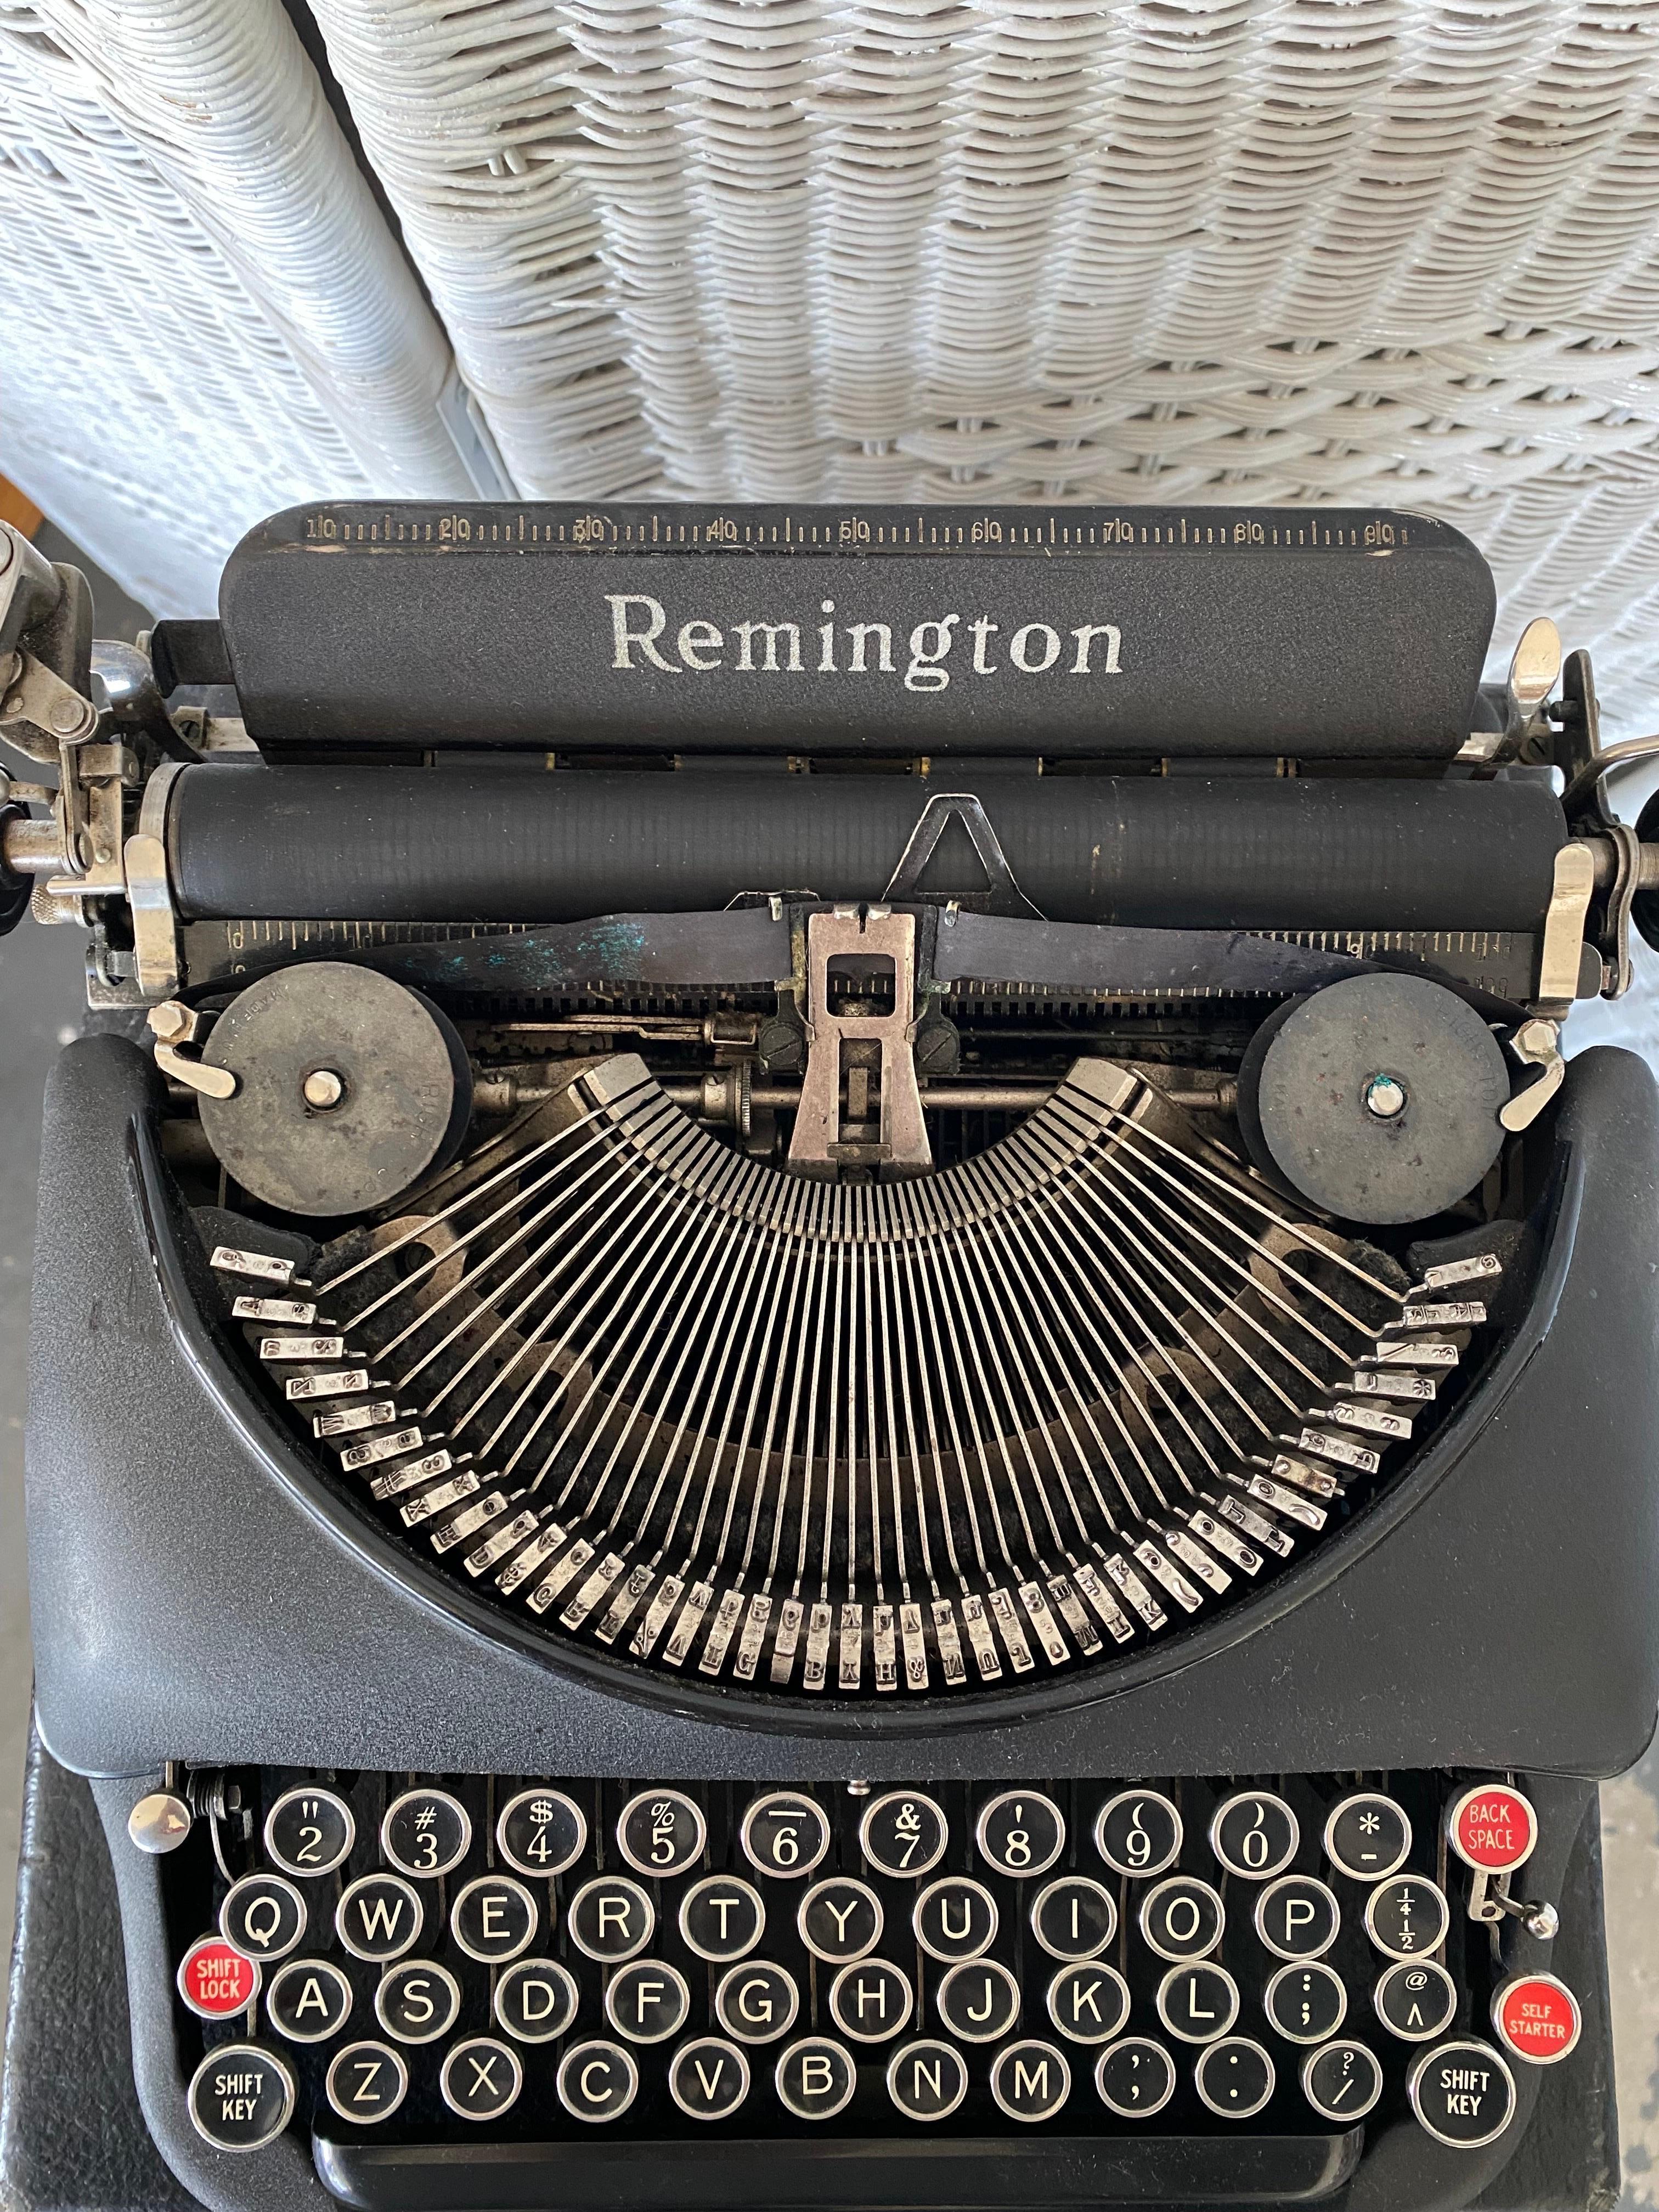 Milieu du XXe siècle 1940s Remington Model 5 Portable Black Typewriter with Case (Machine à écrire portable noire avec étui) 